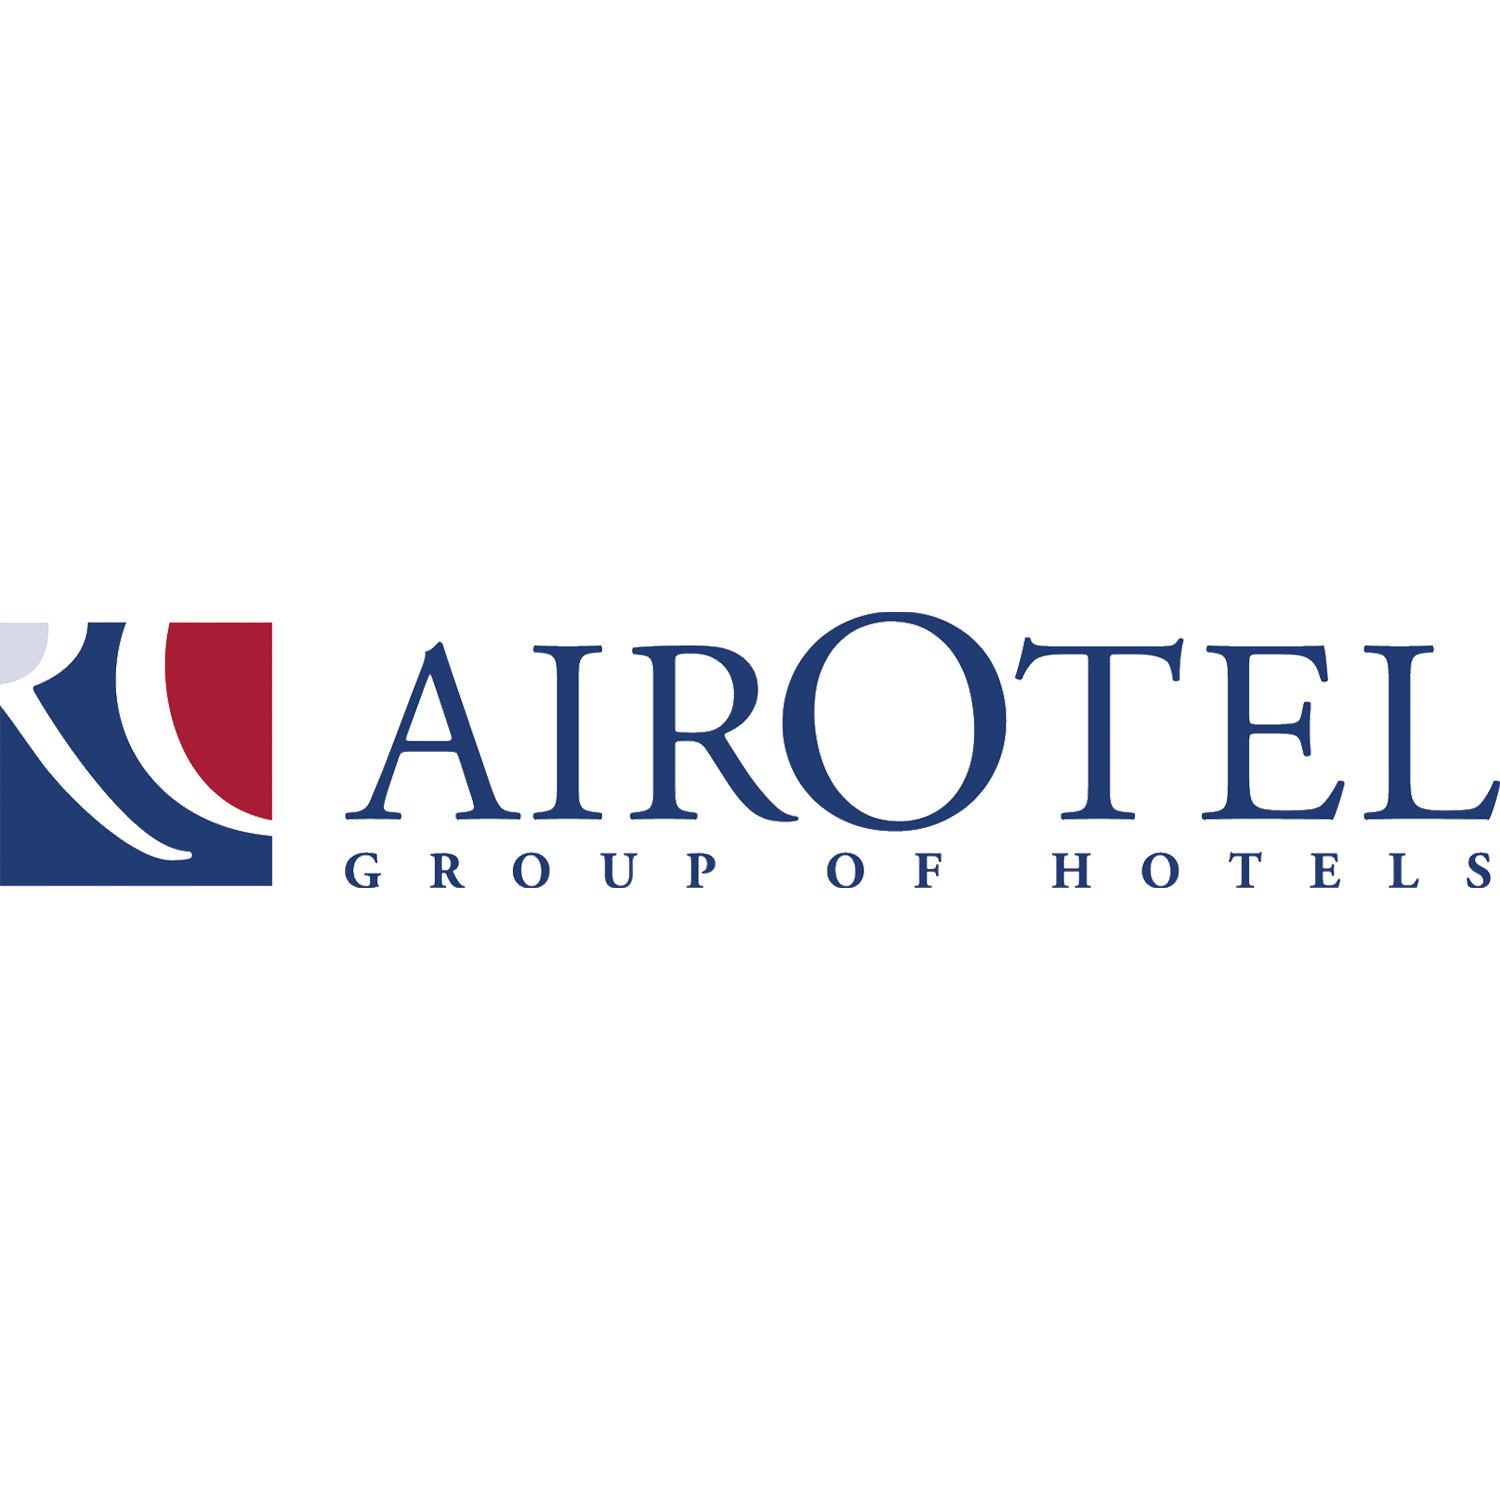 AirOtel